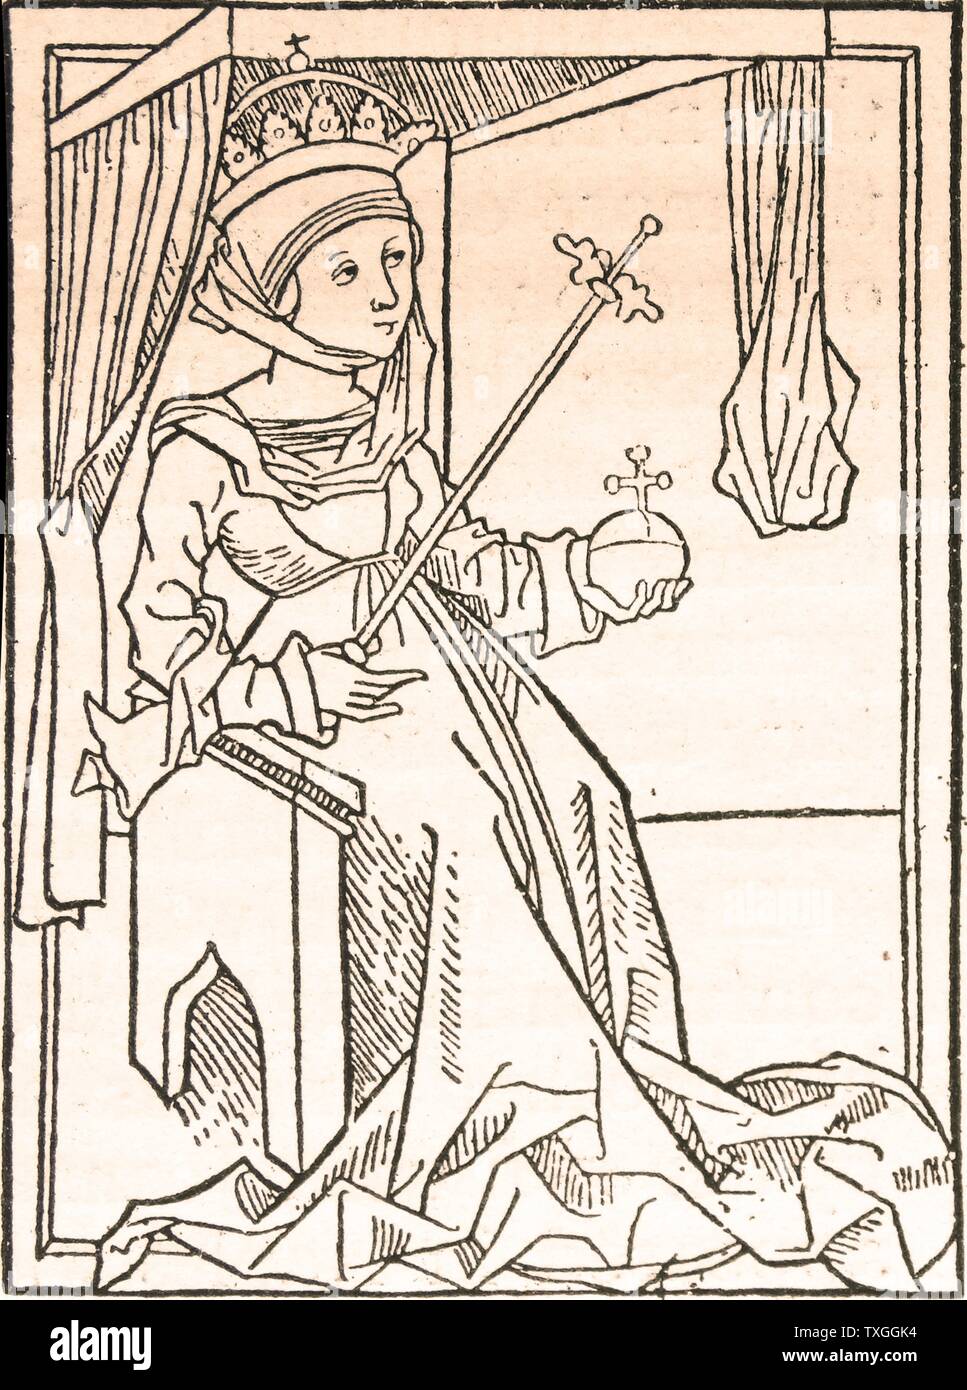 Königin Maria. Entnommen aus einem Holzschnitt, der Maria und ihr Mann Sigismund von Luxemburg darstellt. Sigismund war auch deutscher Kaiser und wurde Regent Ungarns im Jahre 1387. Stockfoto